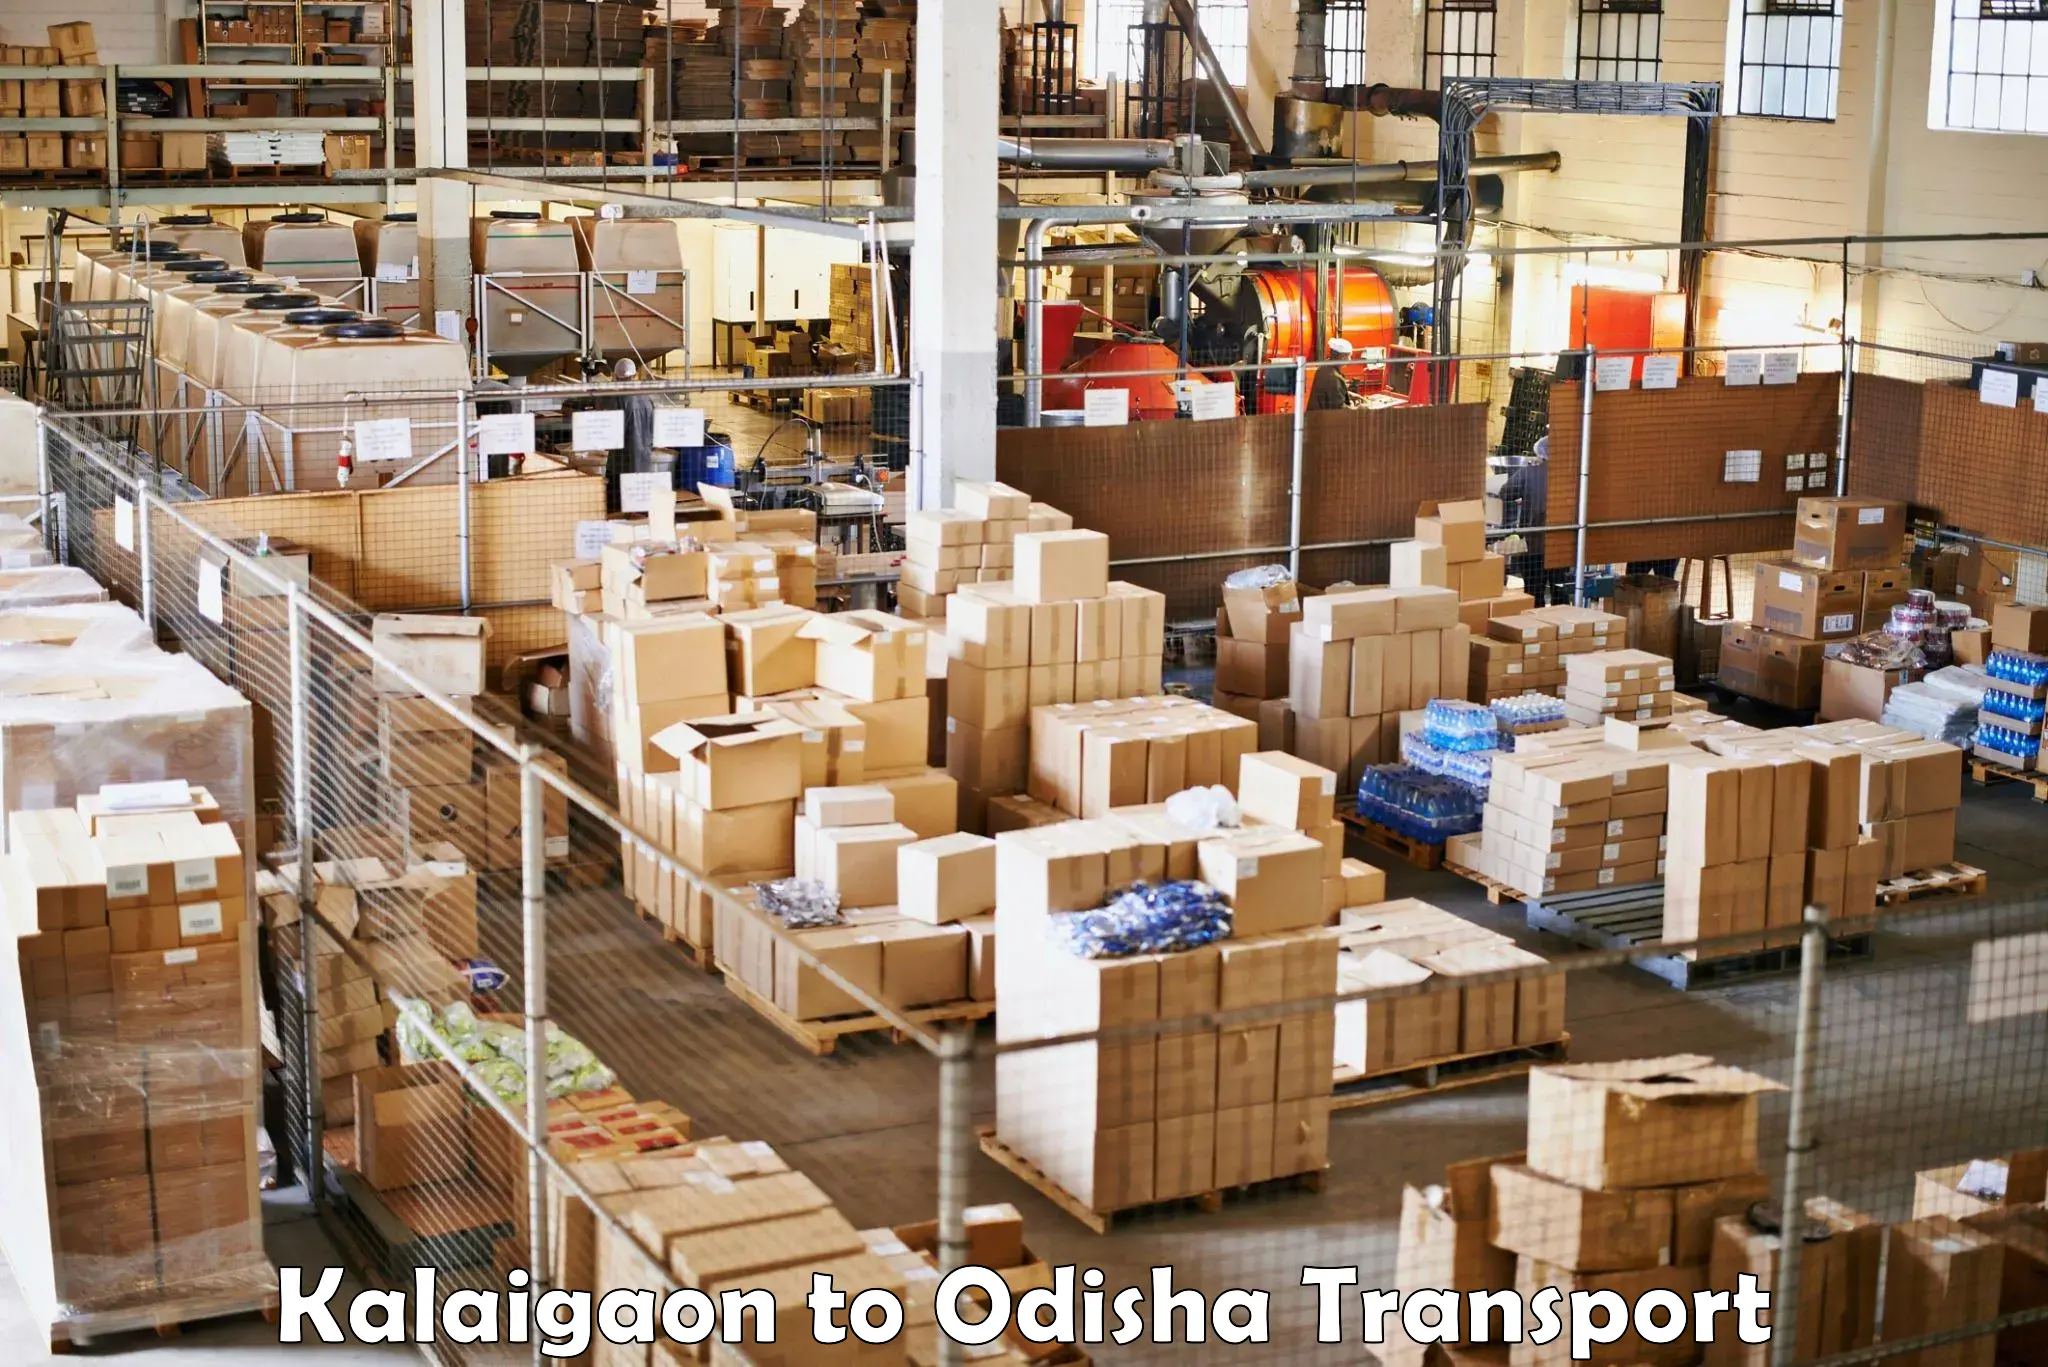 Vehicle transport services Kalaigaon to Tikiri